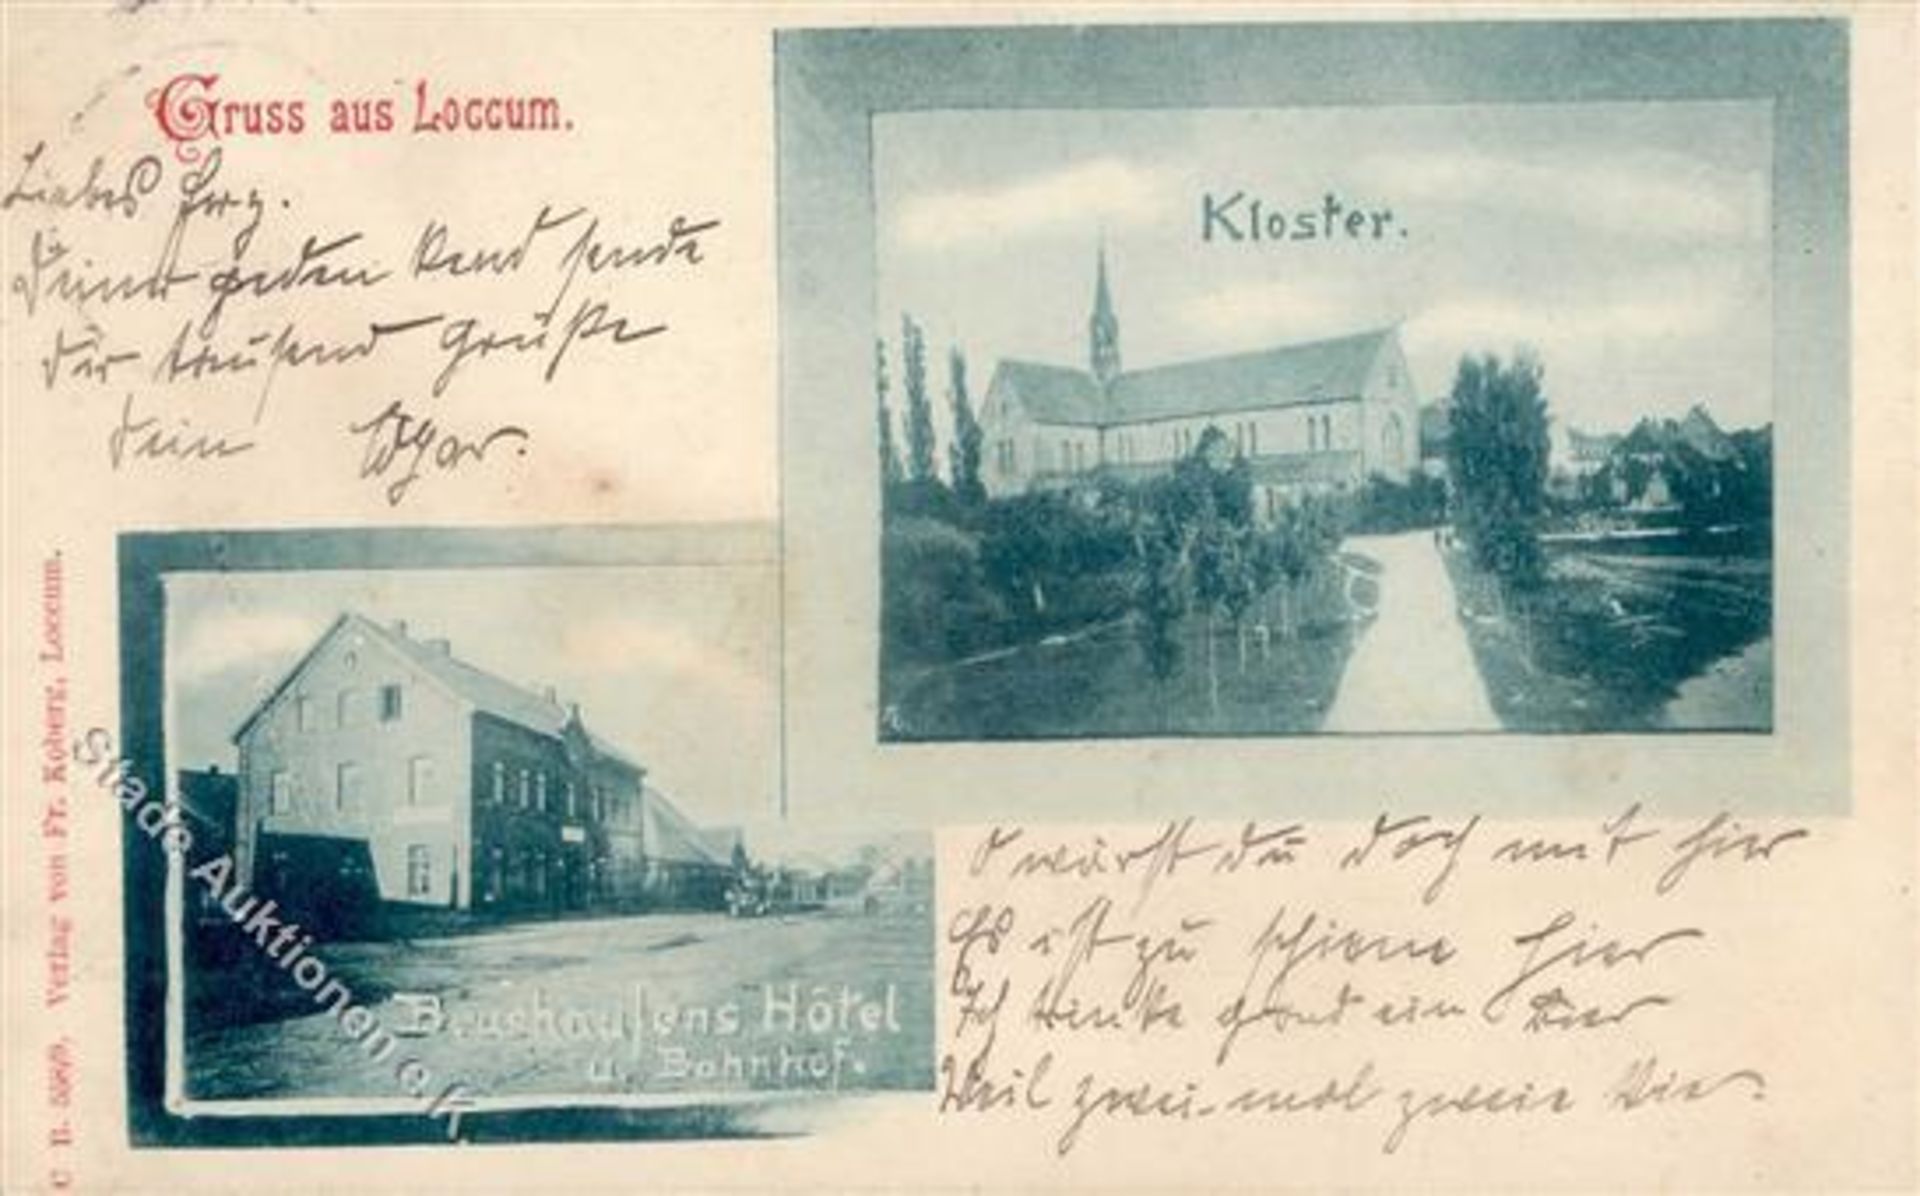 Loccum (3076) Bahnhof Hotel Beushaufen Kloster 1904 II- (beschnitten)Dieses Los wird in einer